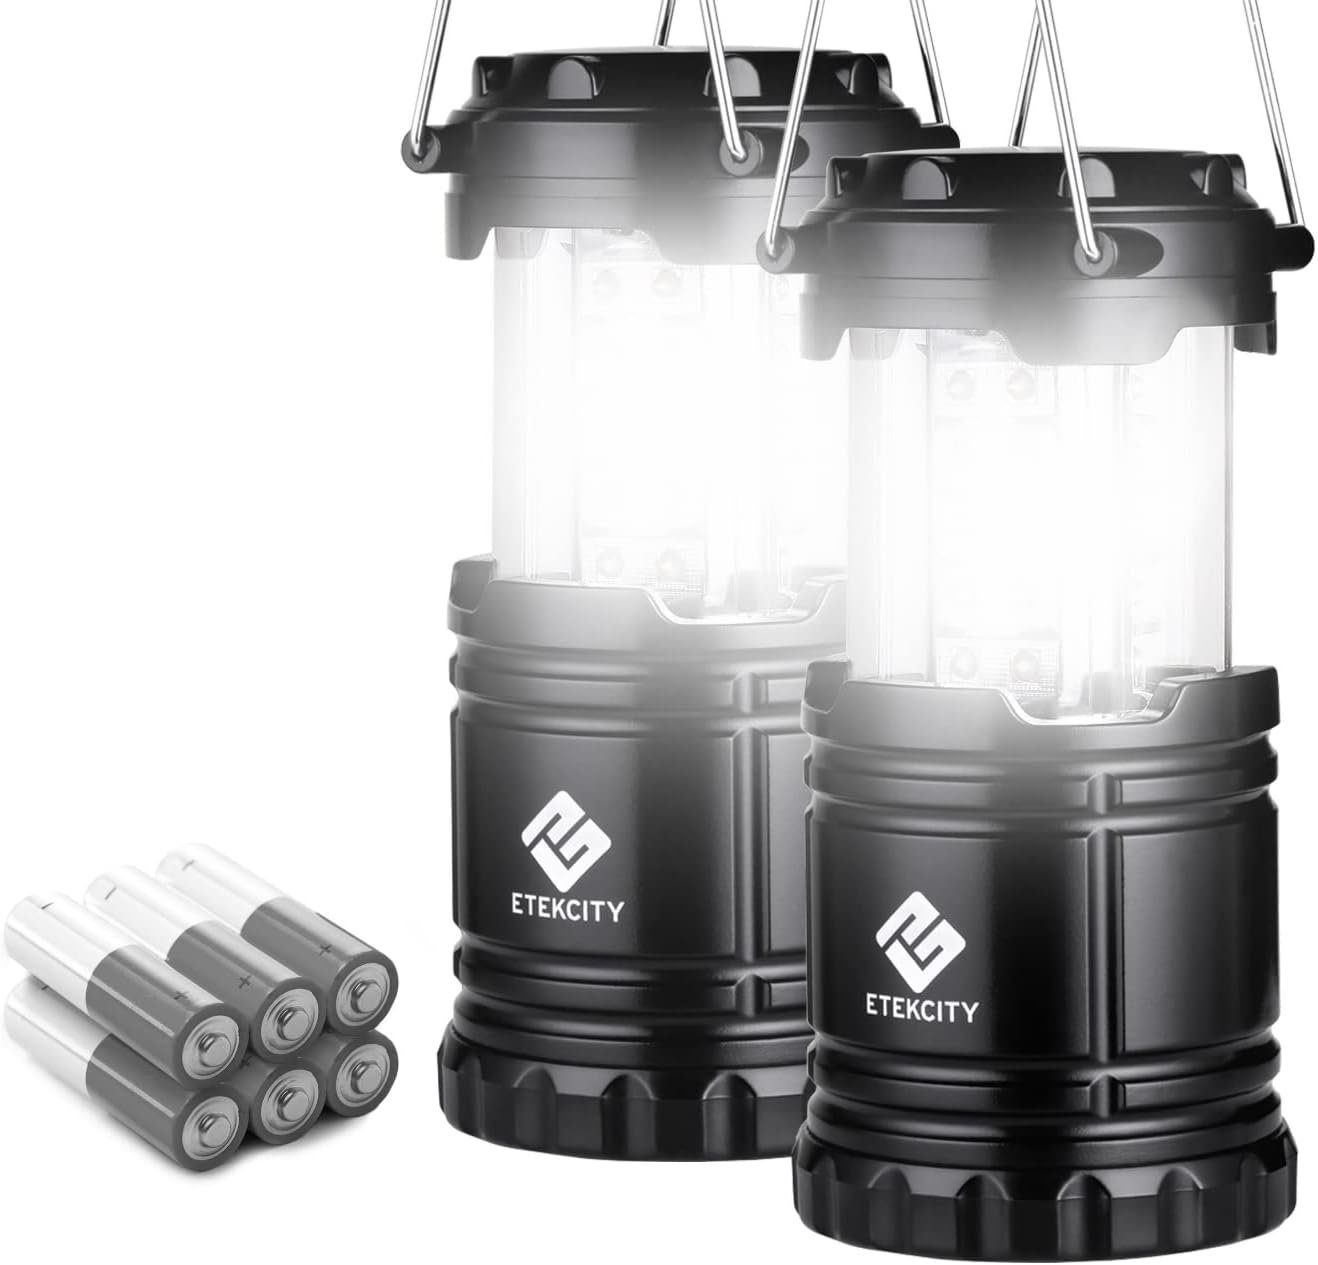 Etekcity Camping Lantern, Battery Powered LED